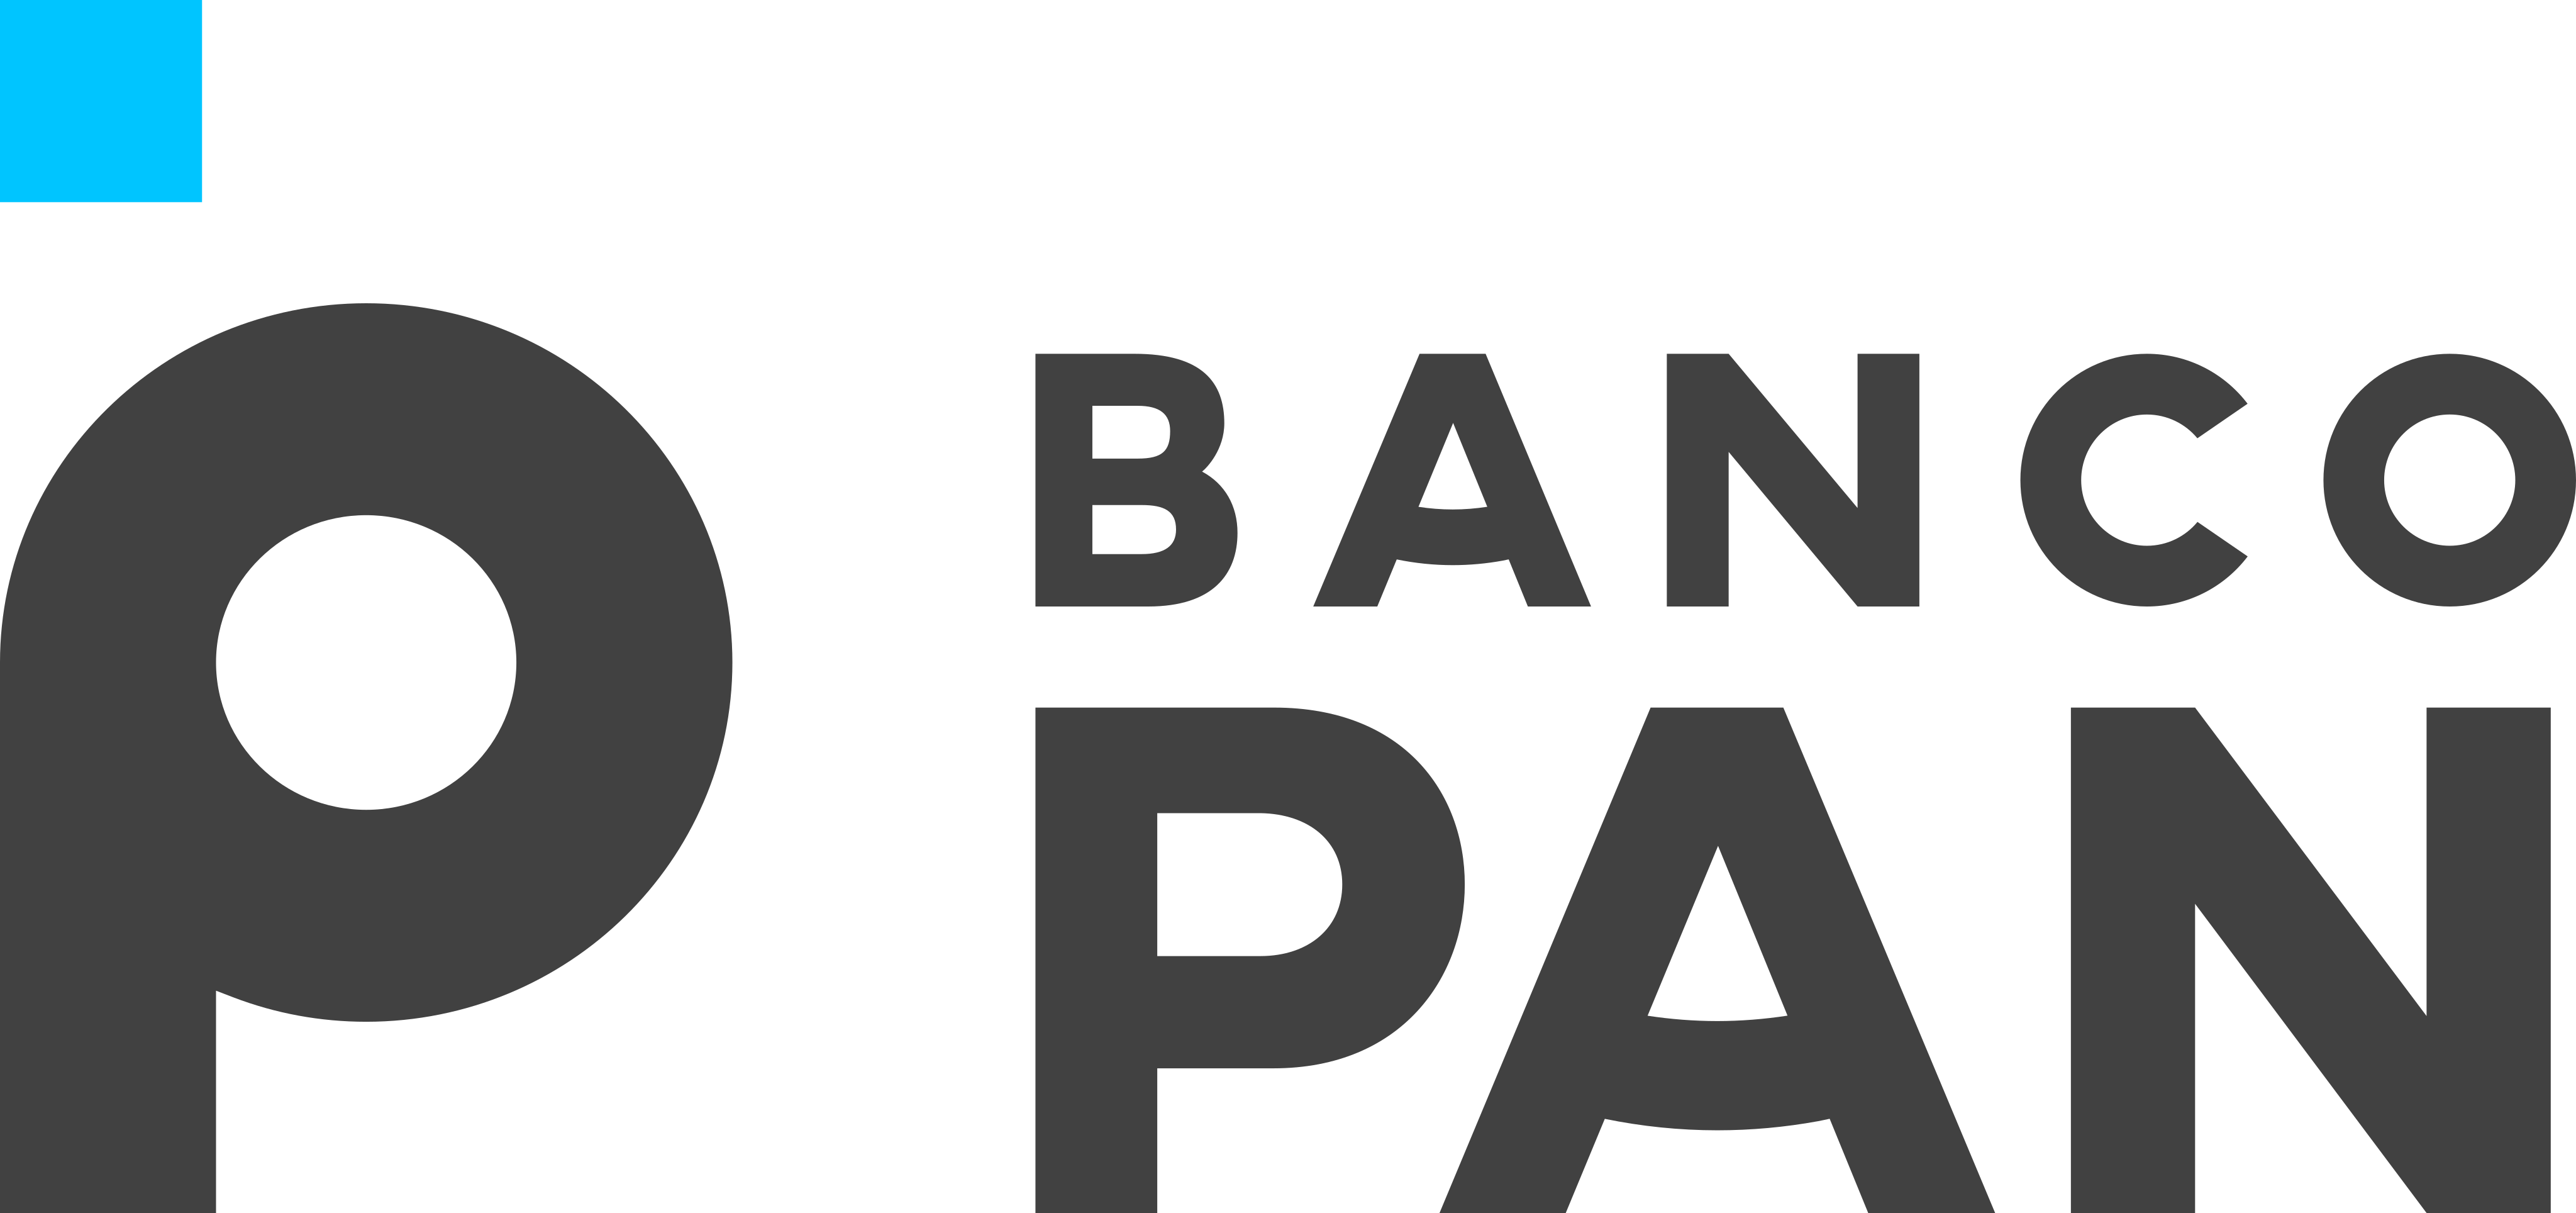 Empréstimo Banco Pan. Fonte: Banco Pan.